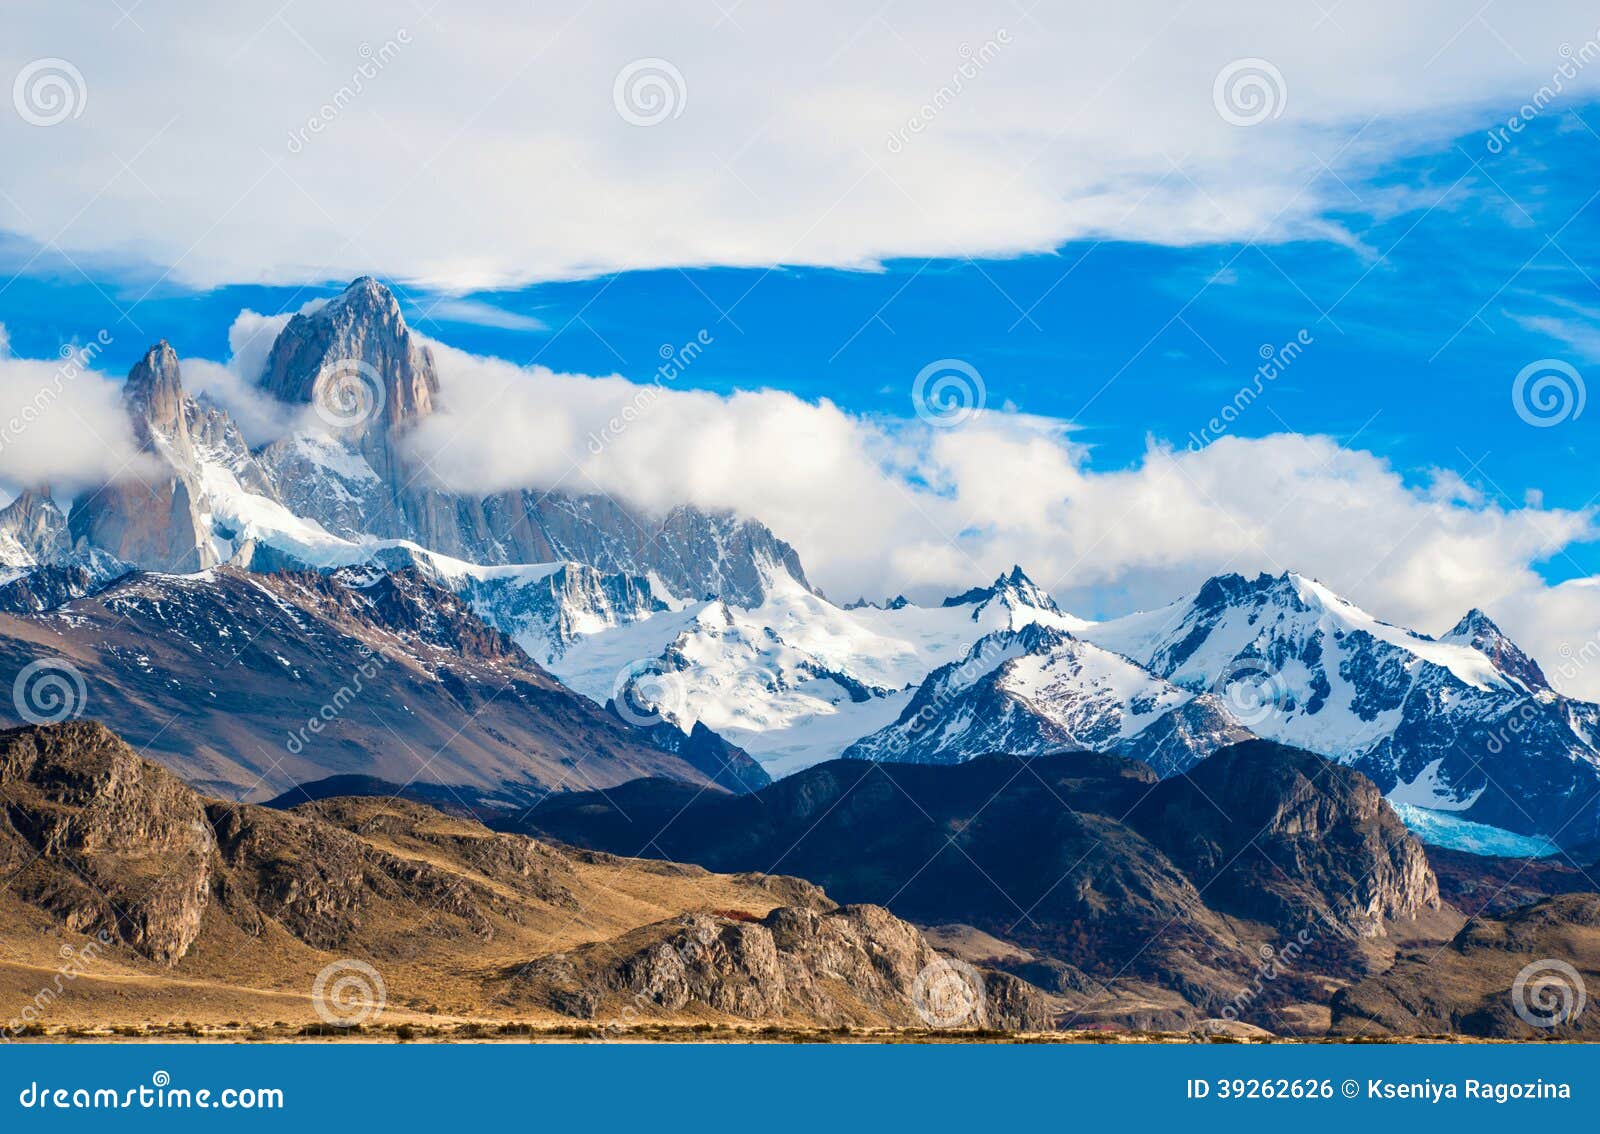 fitz roy mountain, el chalten, patagonia